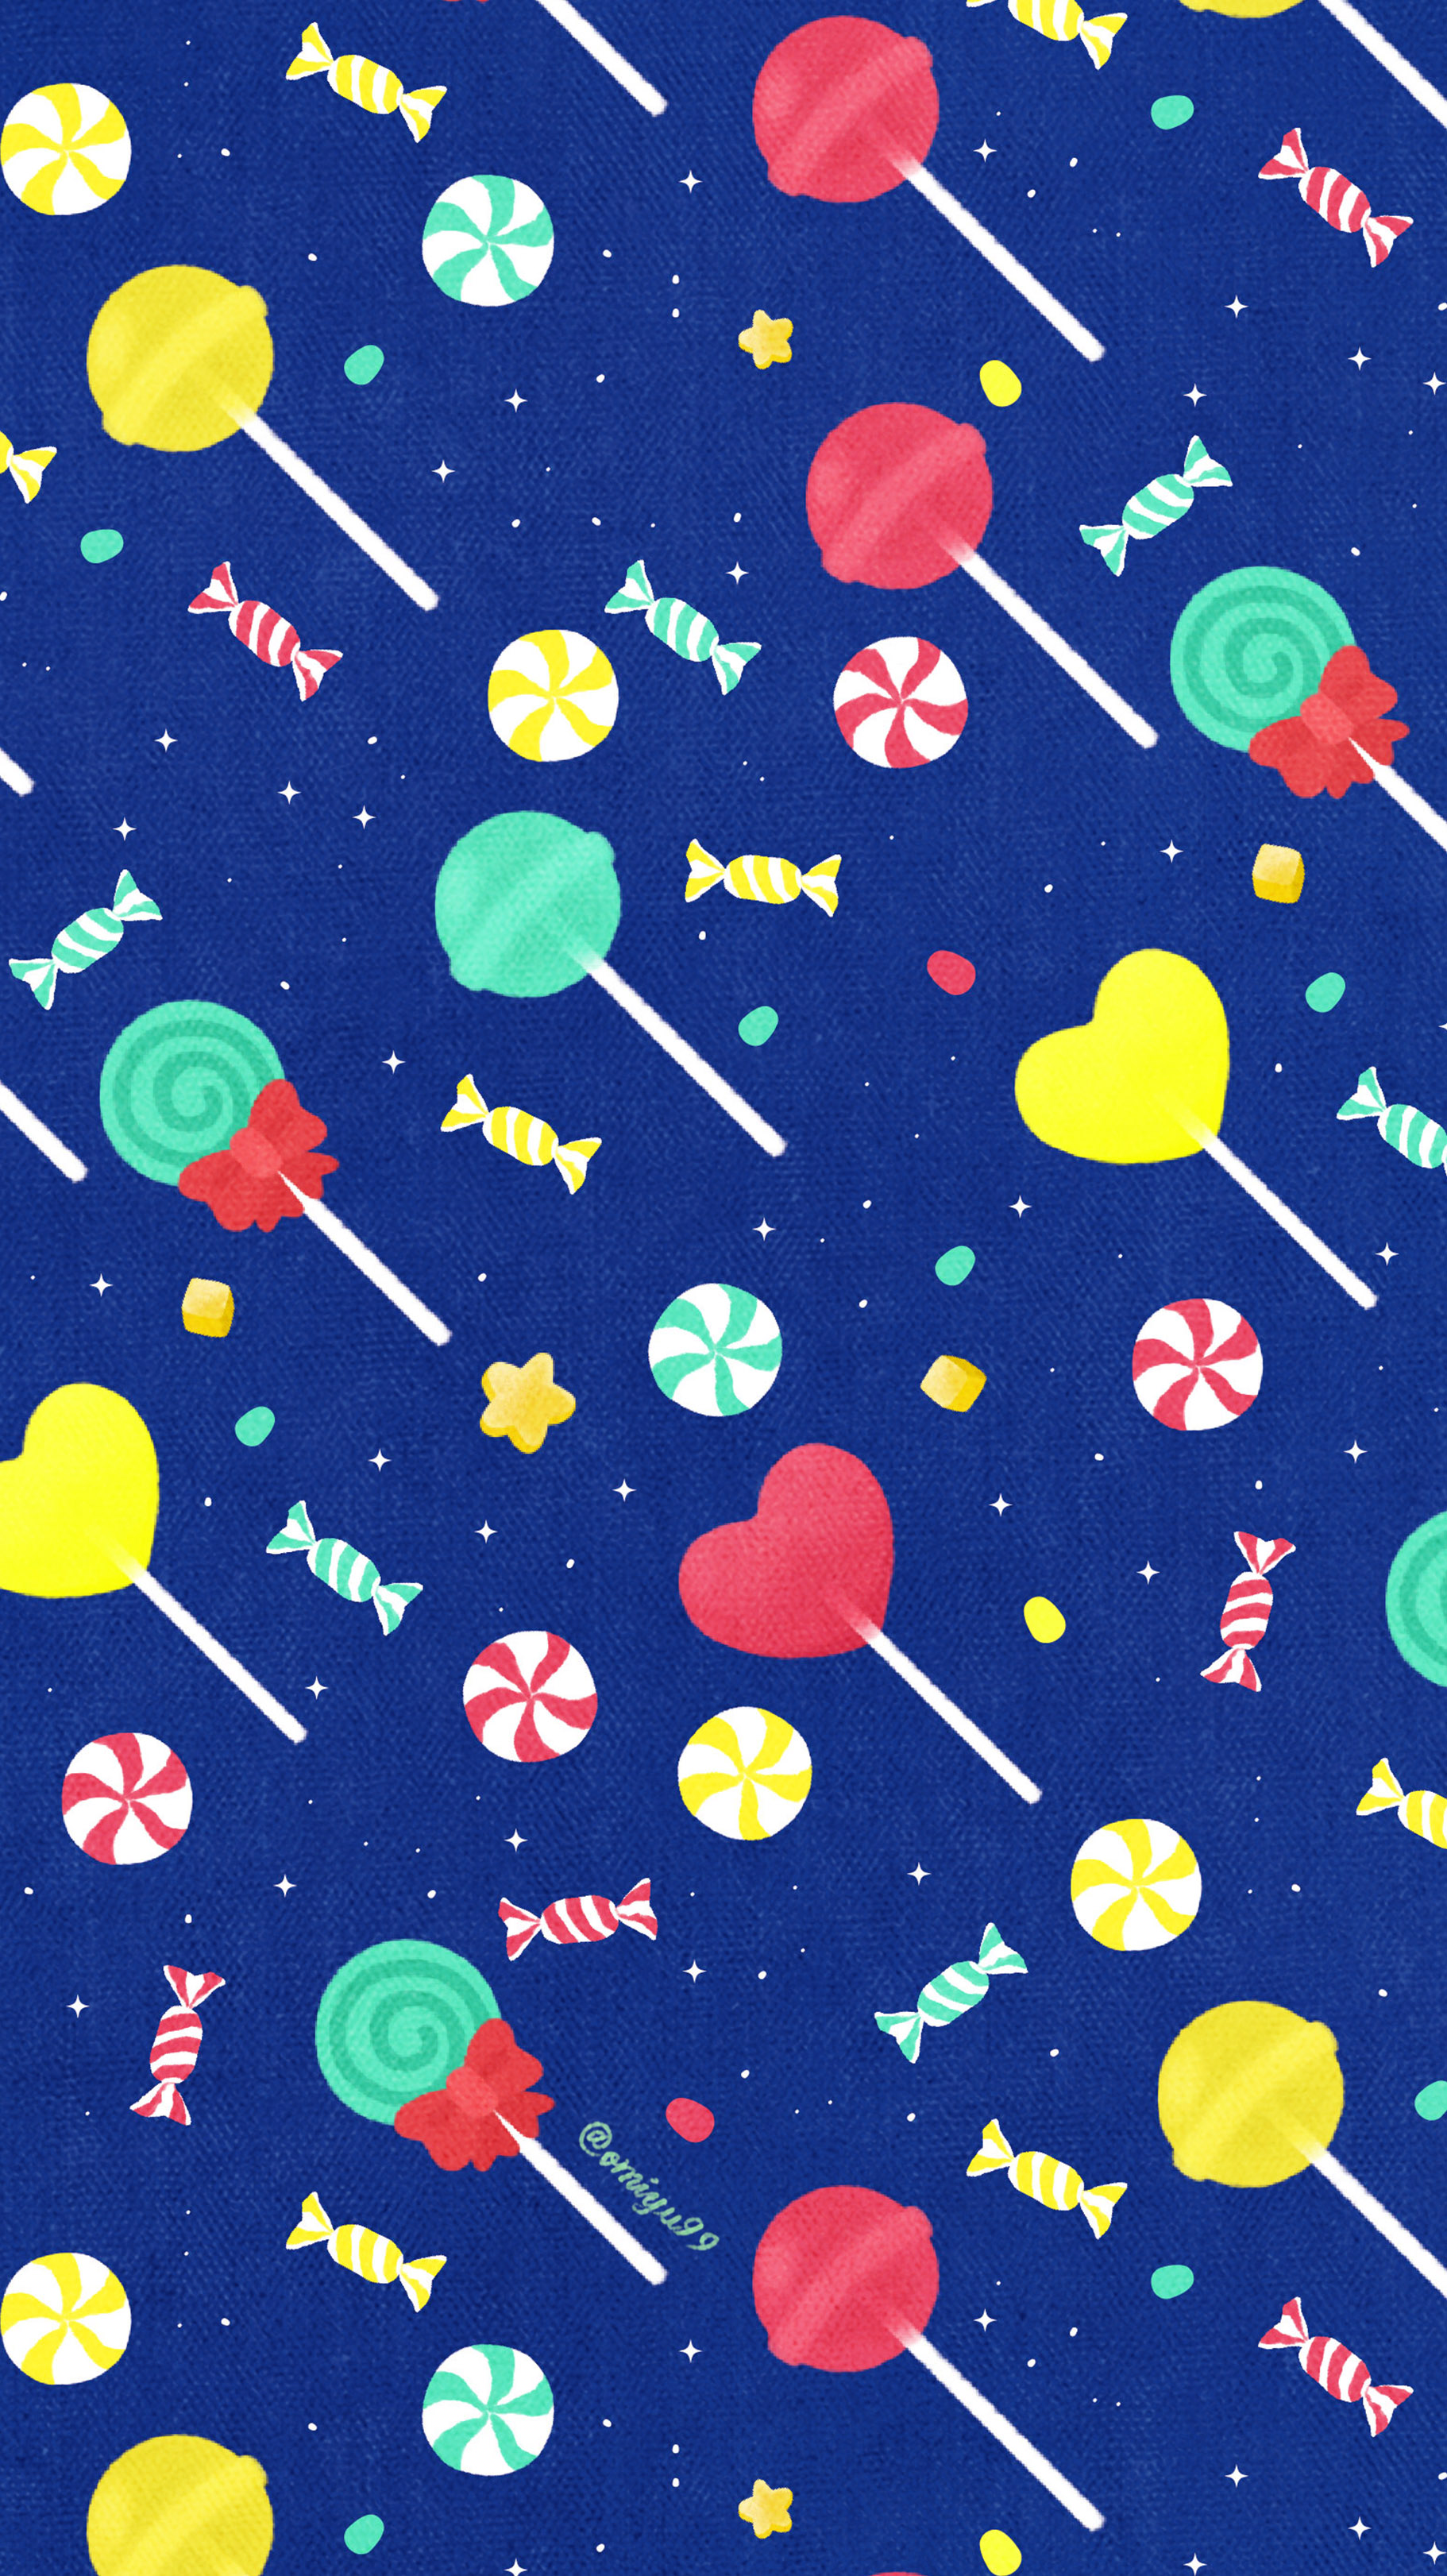 Omiyu お返事遅くなります 飴ちゃんな壁紙 Illust Illustration 壁紙 イラスト Iphone壁紙 キャンディ 飴 食べ物 Candy Lollipop T Co Xsv7cjg3to Twitter